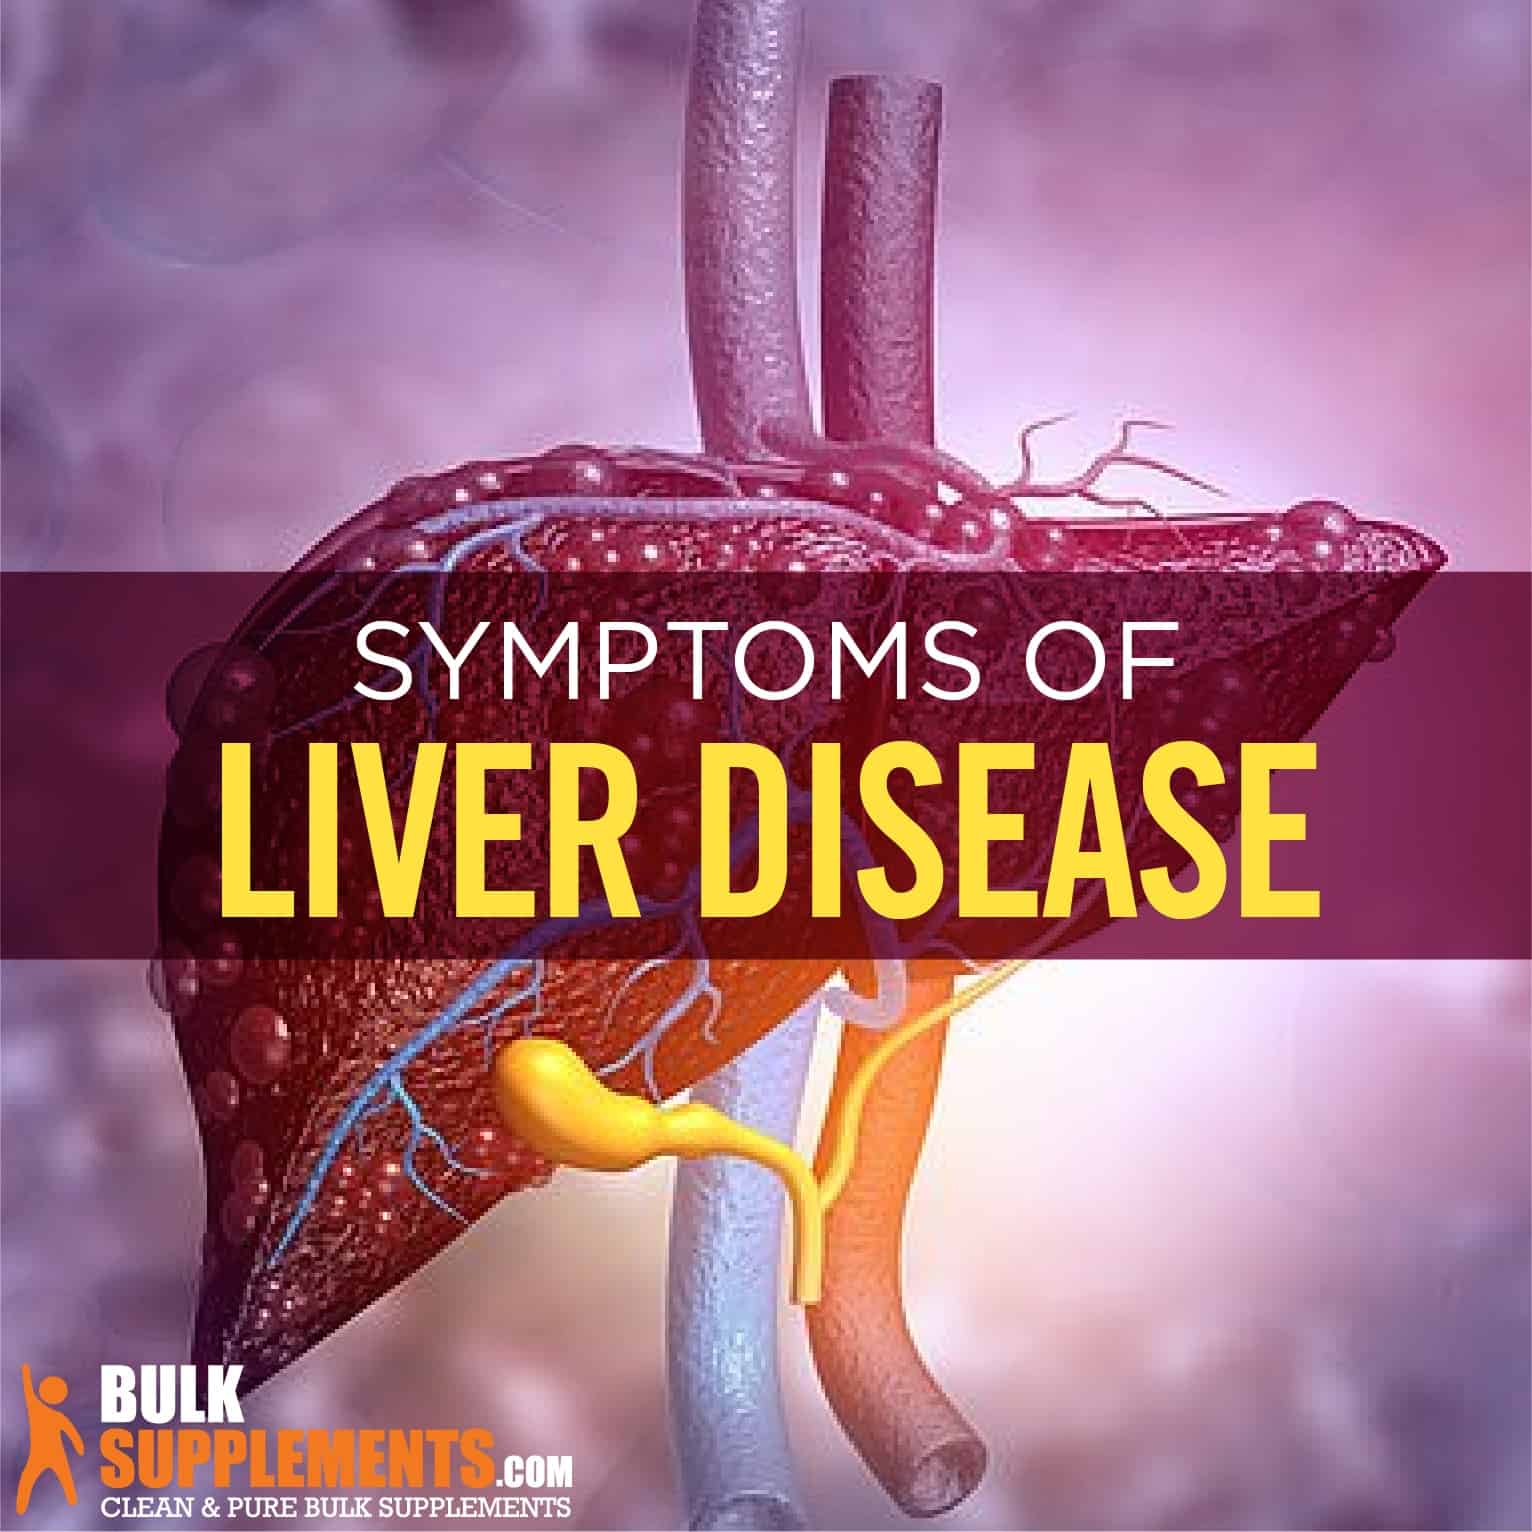 Liver Disease: Symptoms, Causes & Treatment by James Denlinger